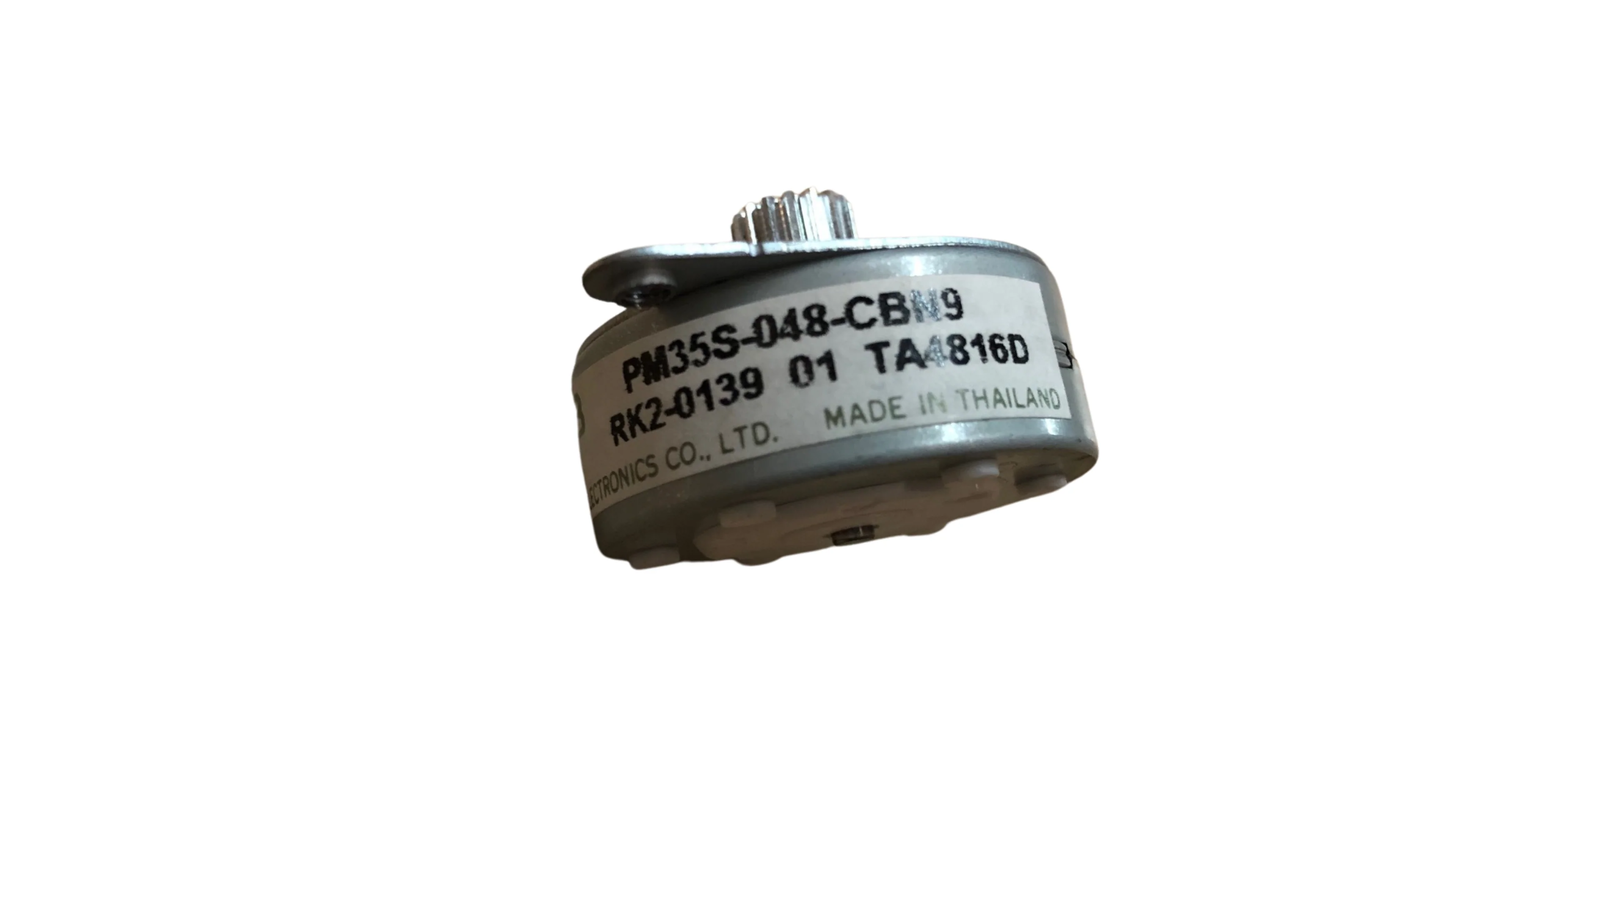 RK2-0139 motor for HP Color LaserJet 3550